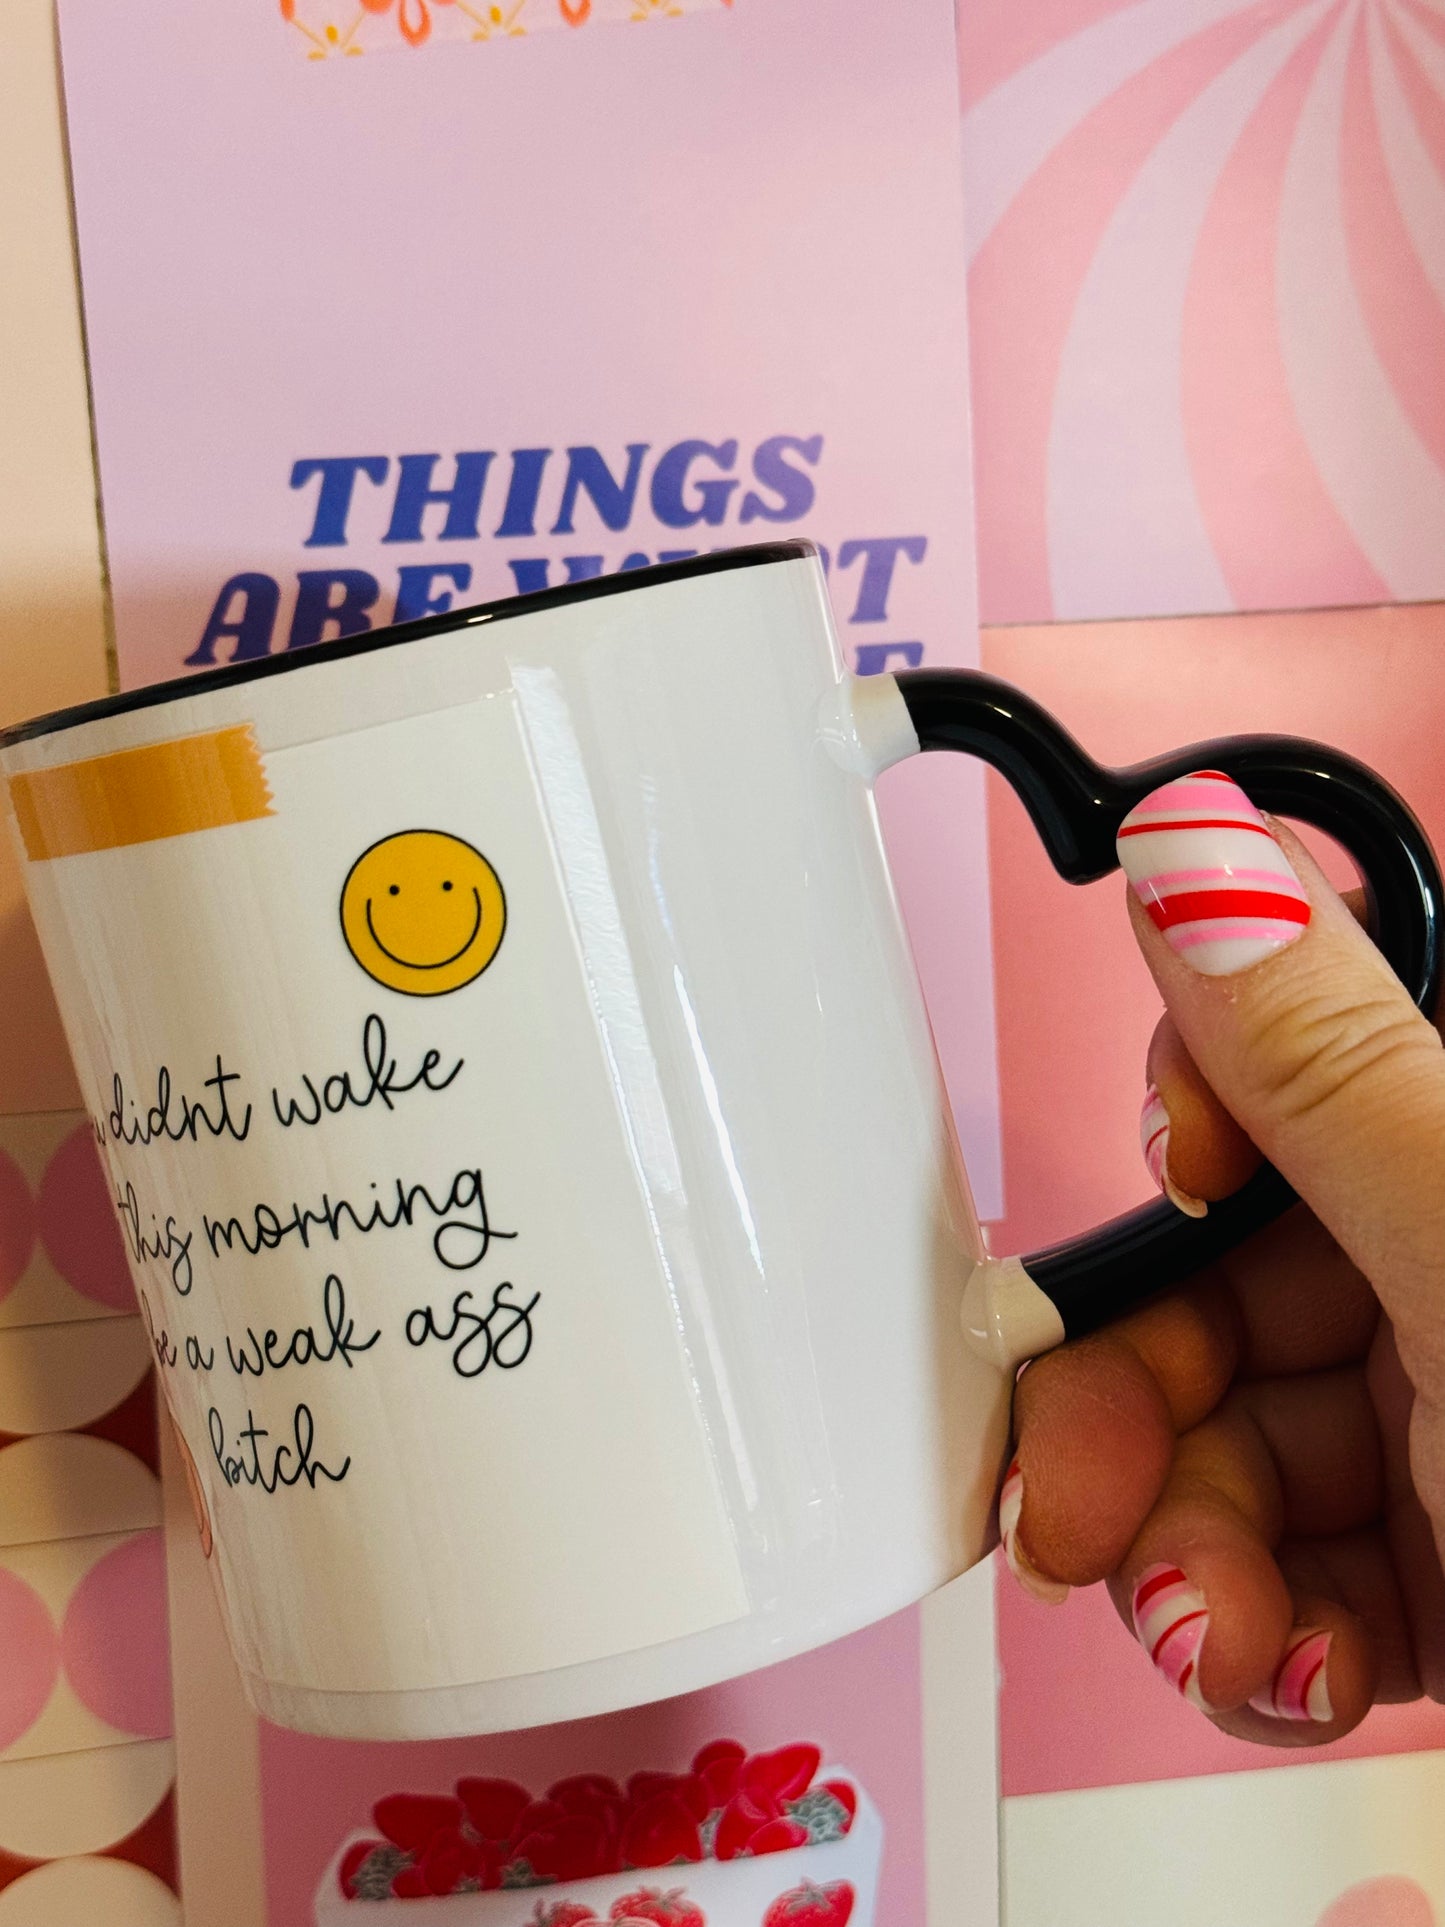 Coffee Mug: Morning Inspo. Weak B-ish